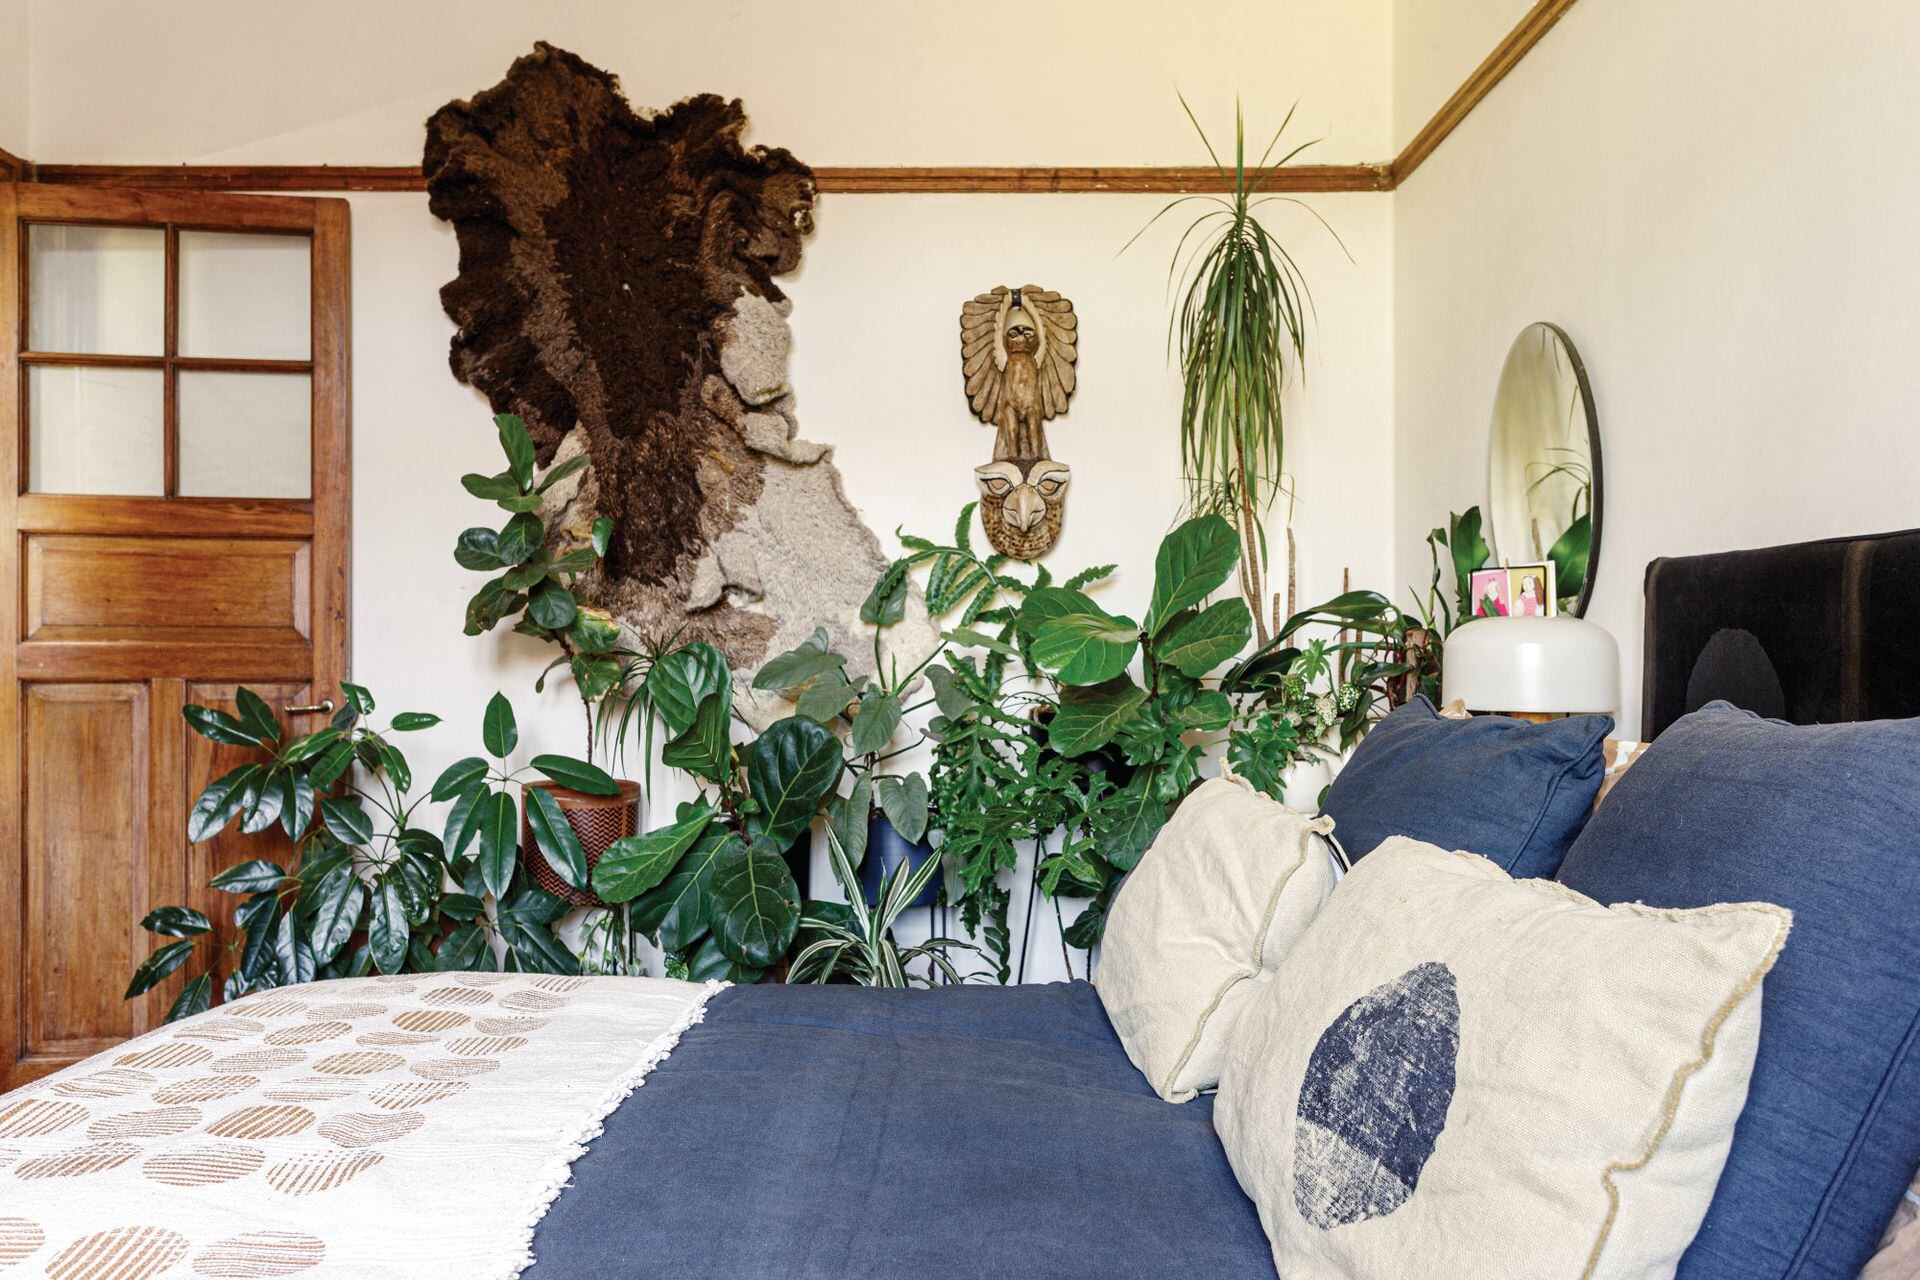 El tapiz de lana natural en tonos de marrón (Vera Somlo) y las plantas le dan al dormitorio un aire exuberante y silvestre.